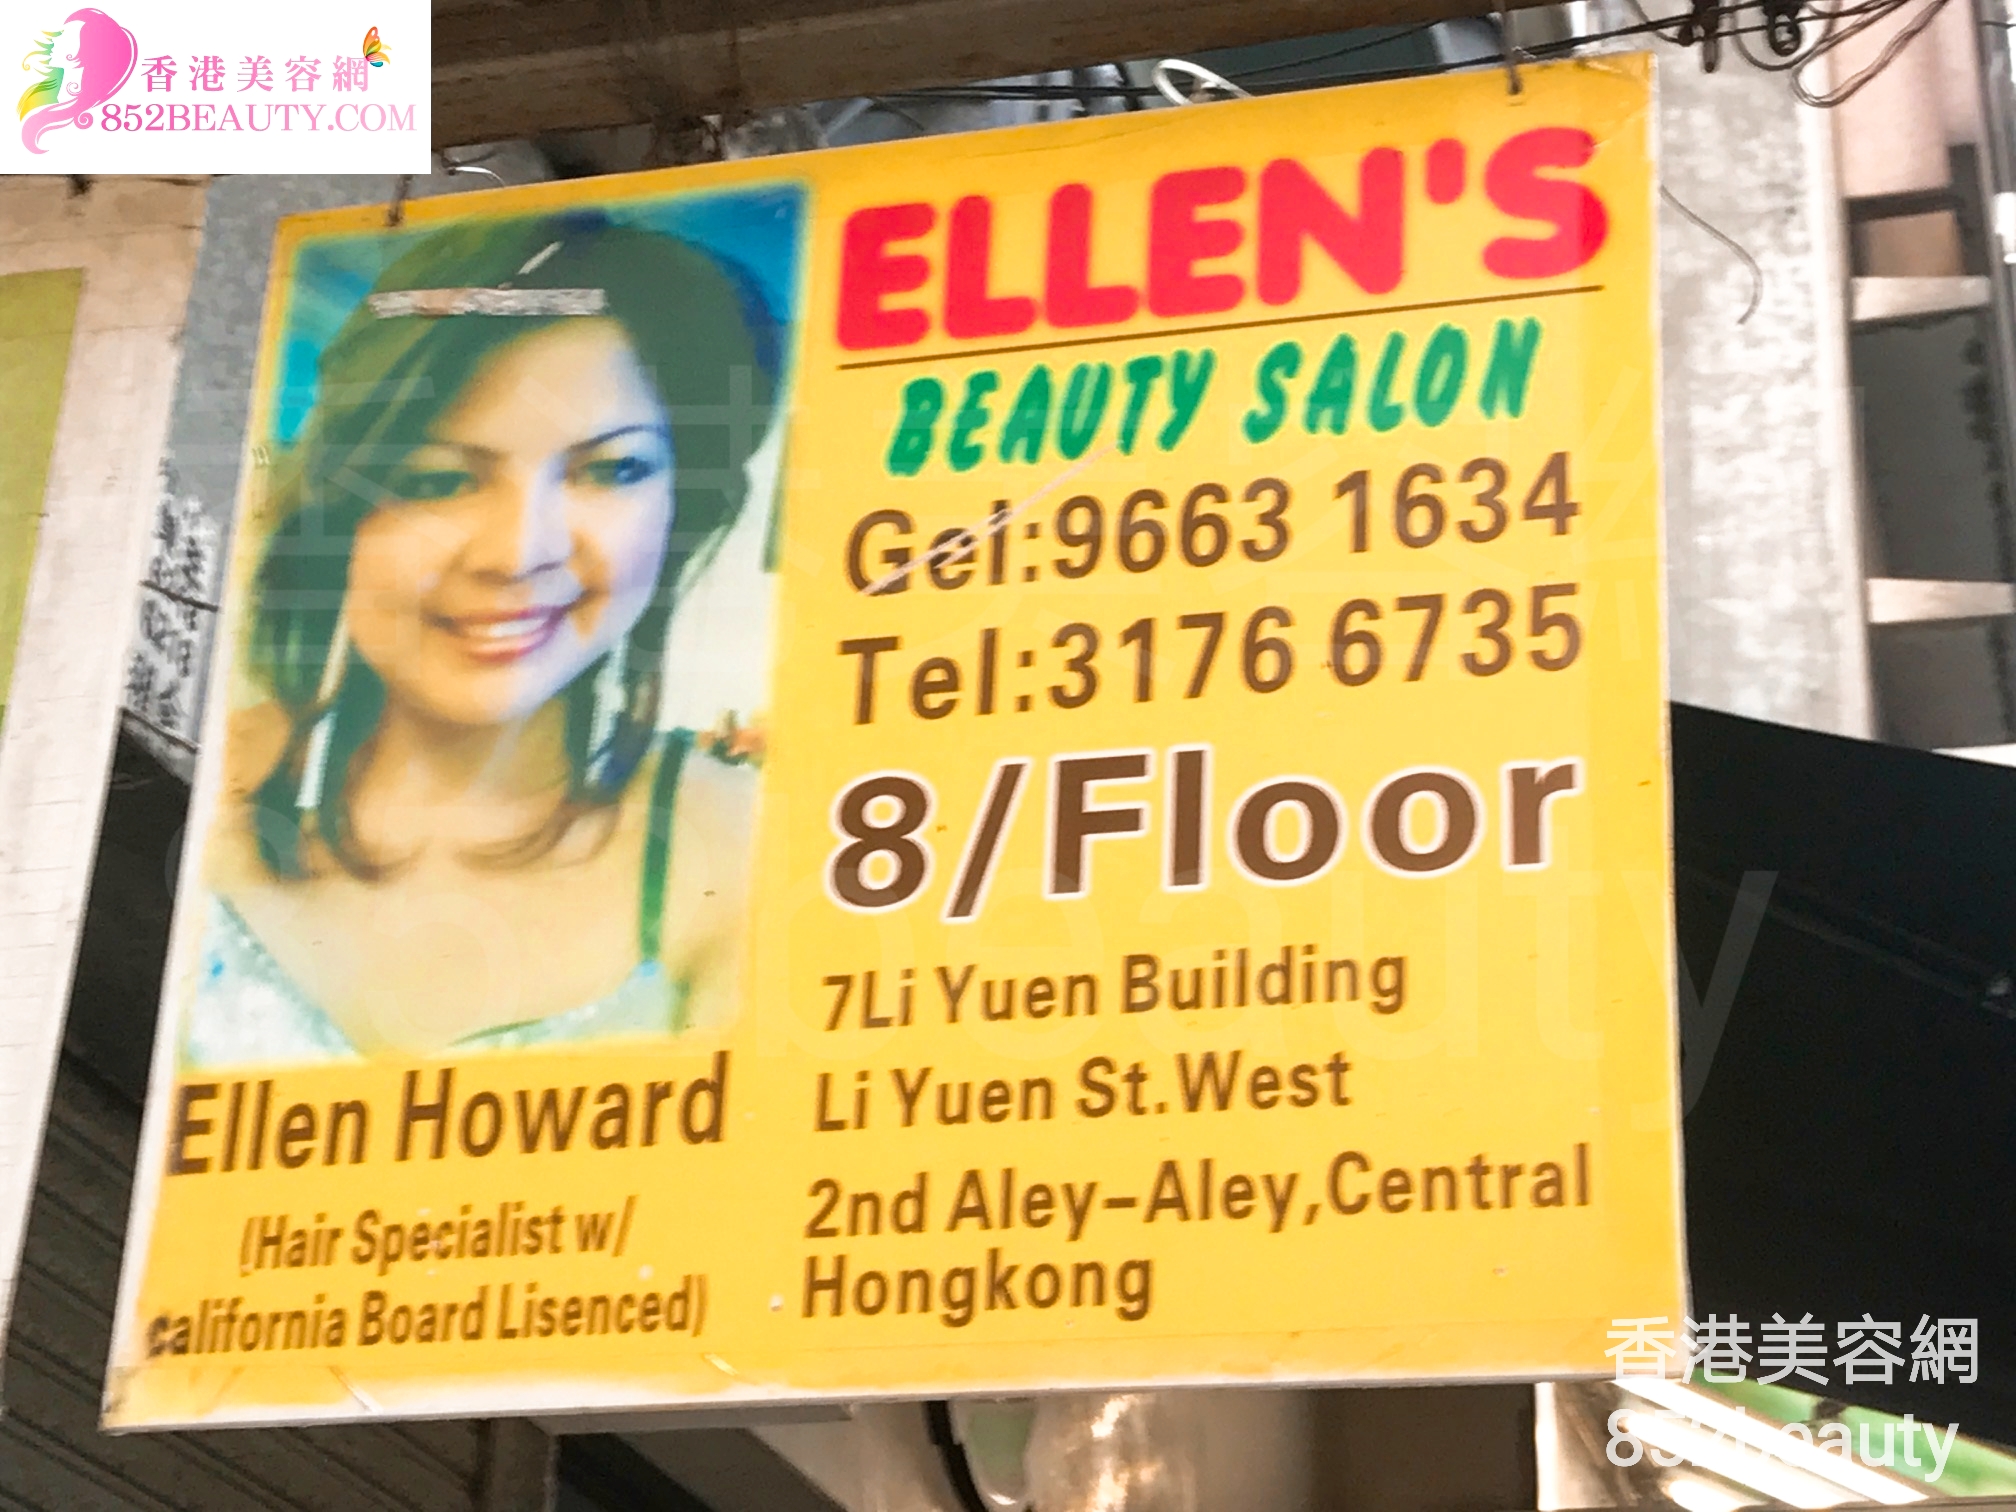 眼部護理: Ellen\'s Beauty Salon